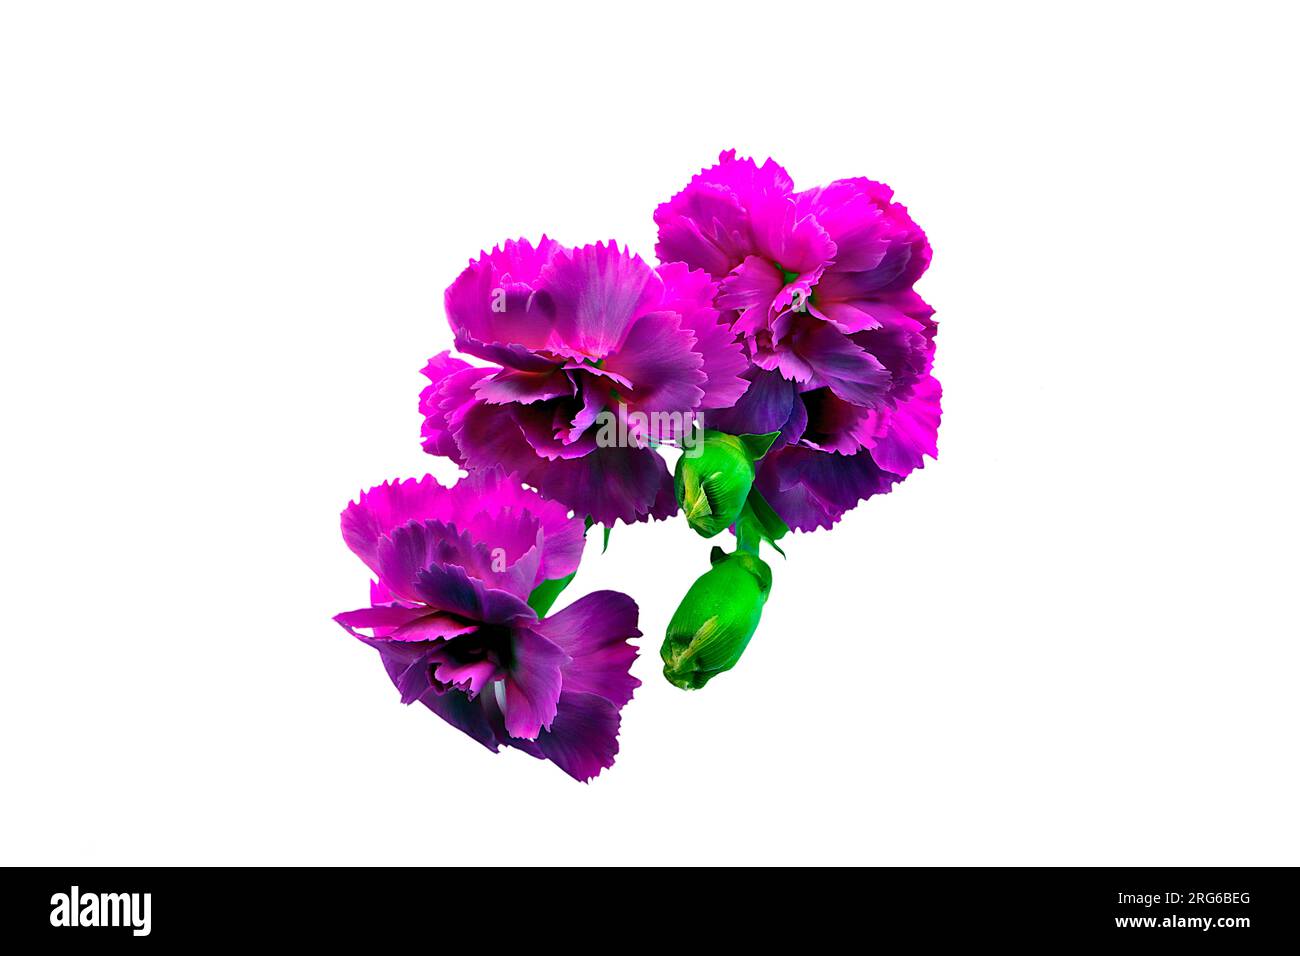 Fiore di garofano viola e rosa scuro audace e vivace su uno stelo verde. Macro, immagine ravvicinata, dettagli petali, impostati su uno sfondo bianco. Foto Stock